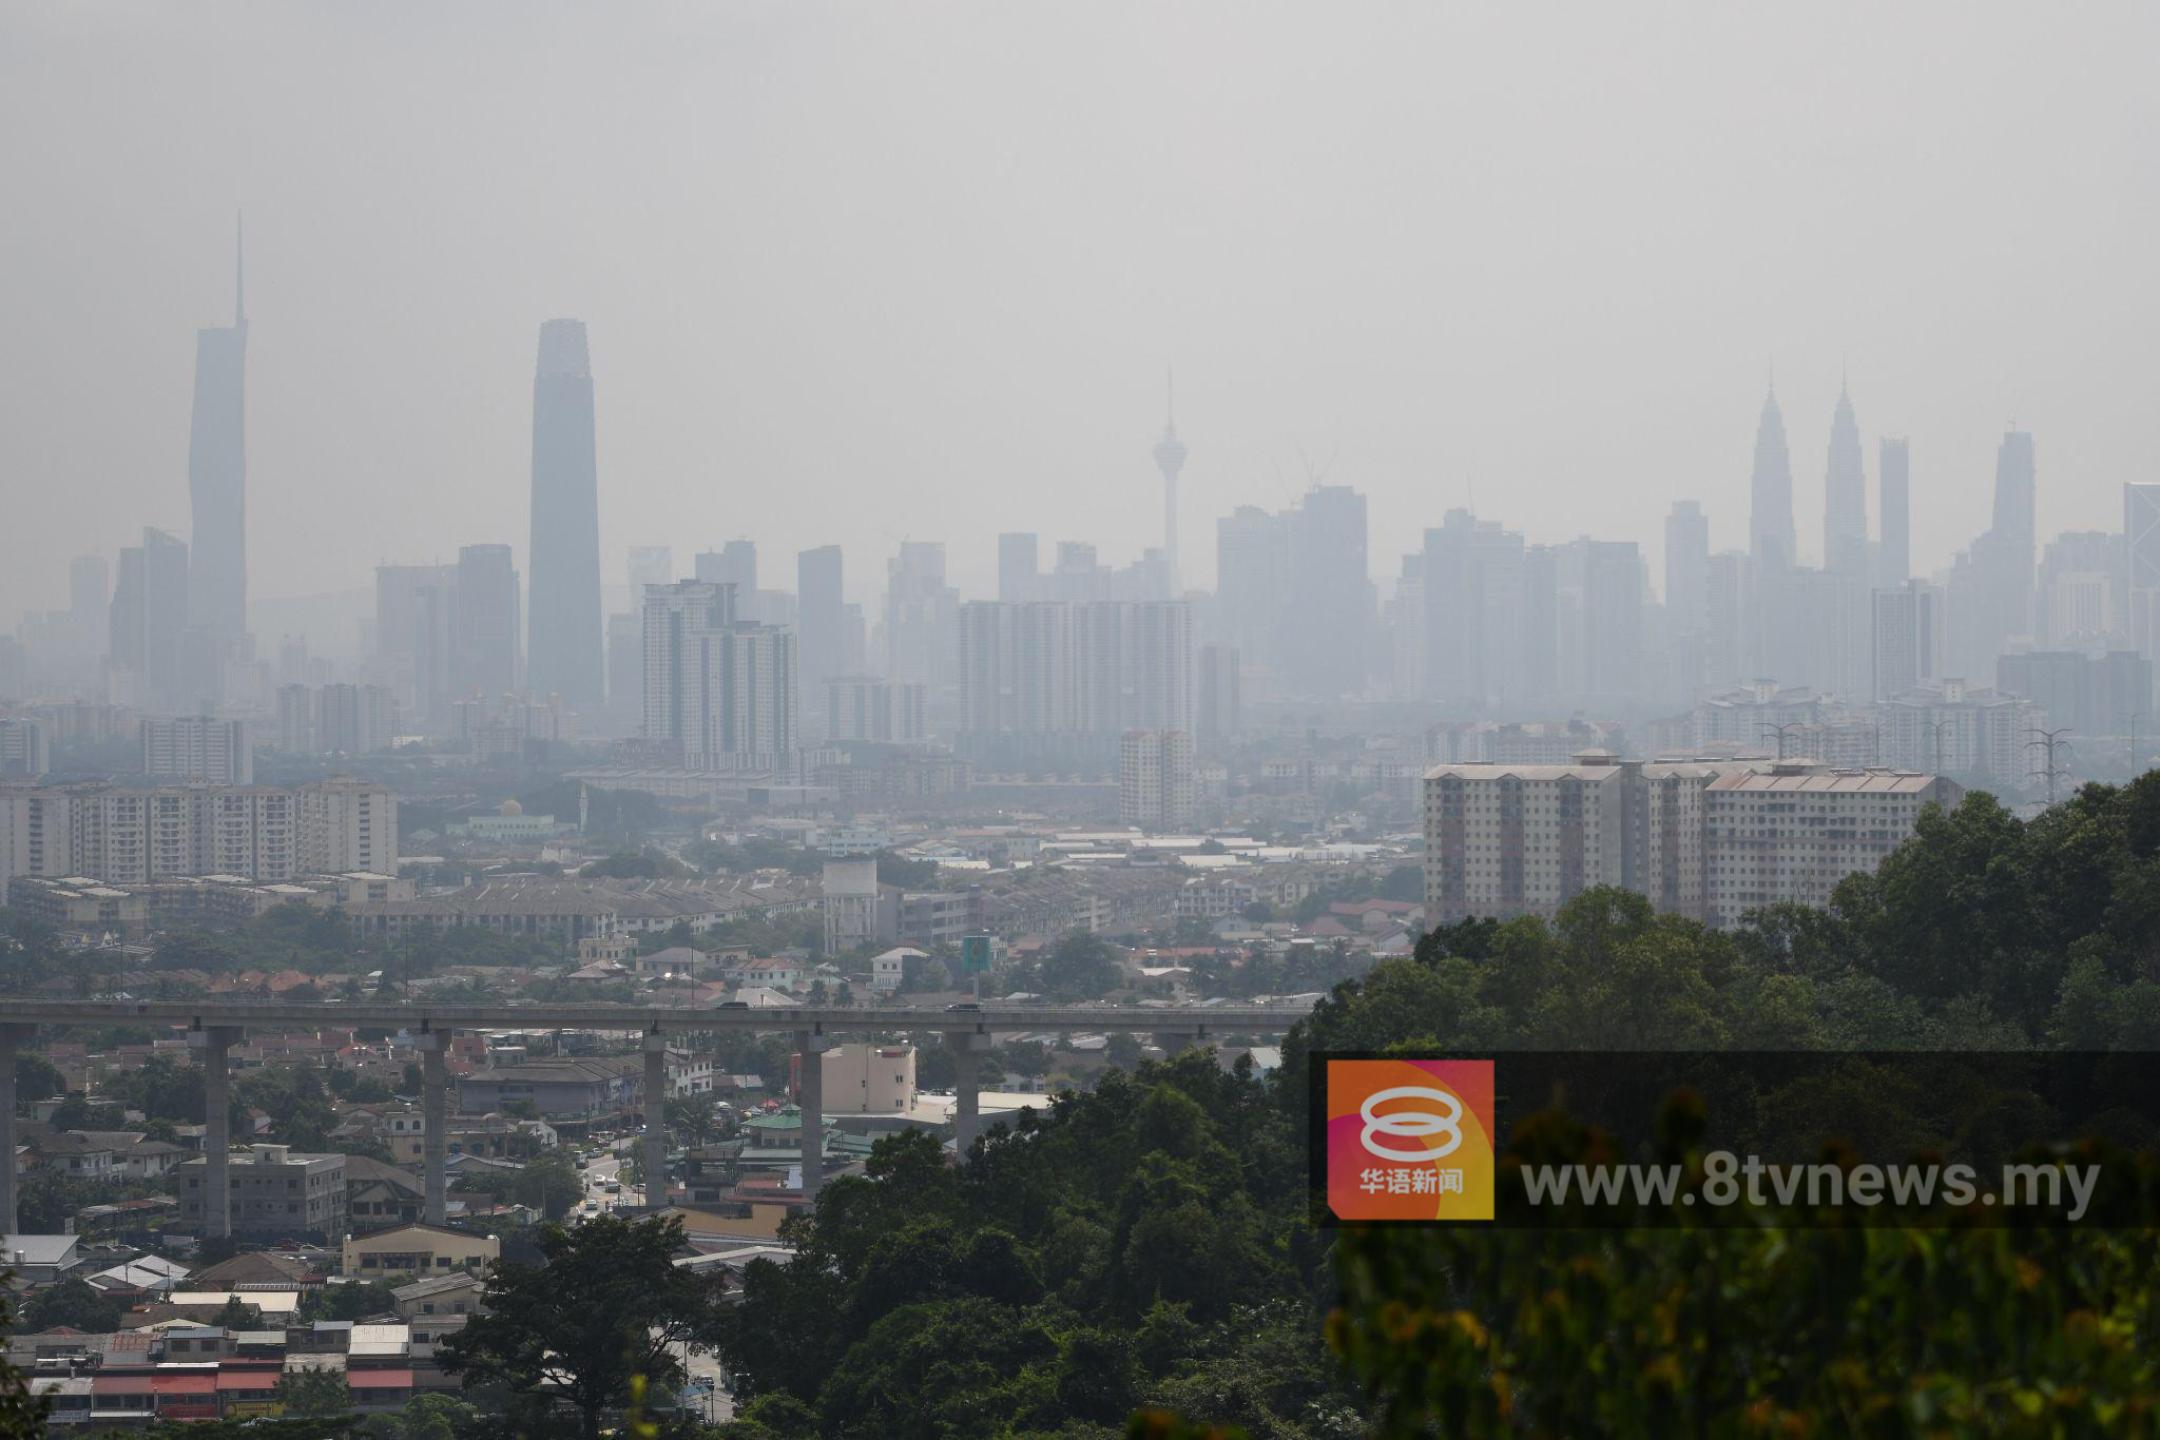 吉隆坡列第5危险城市  内政部检讨衡量标准